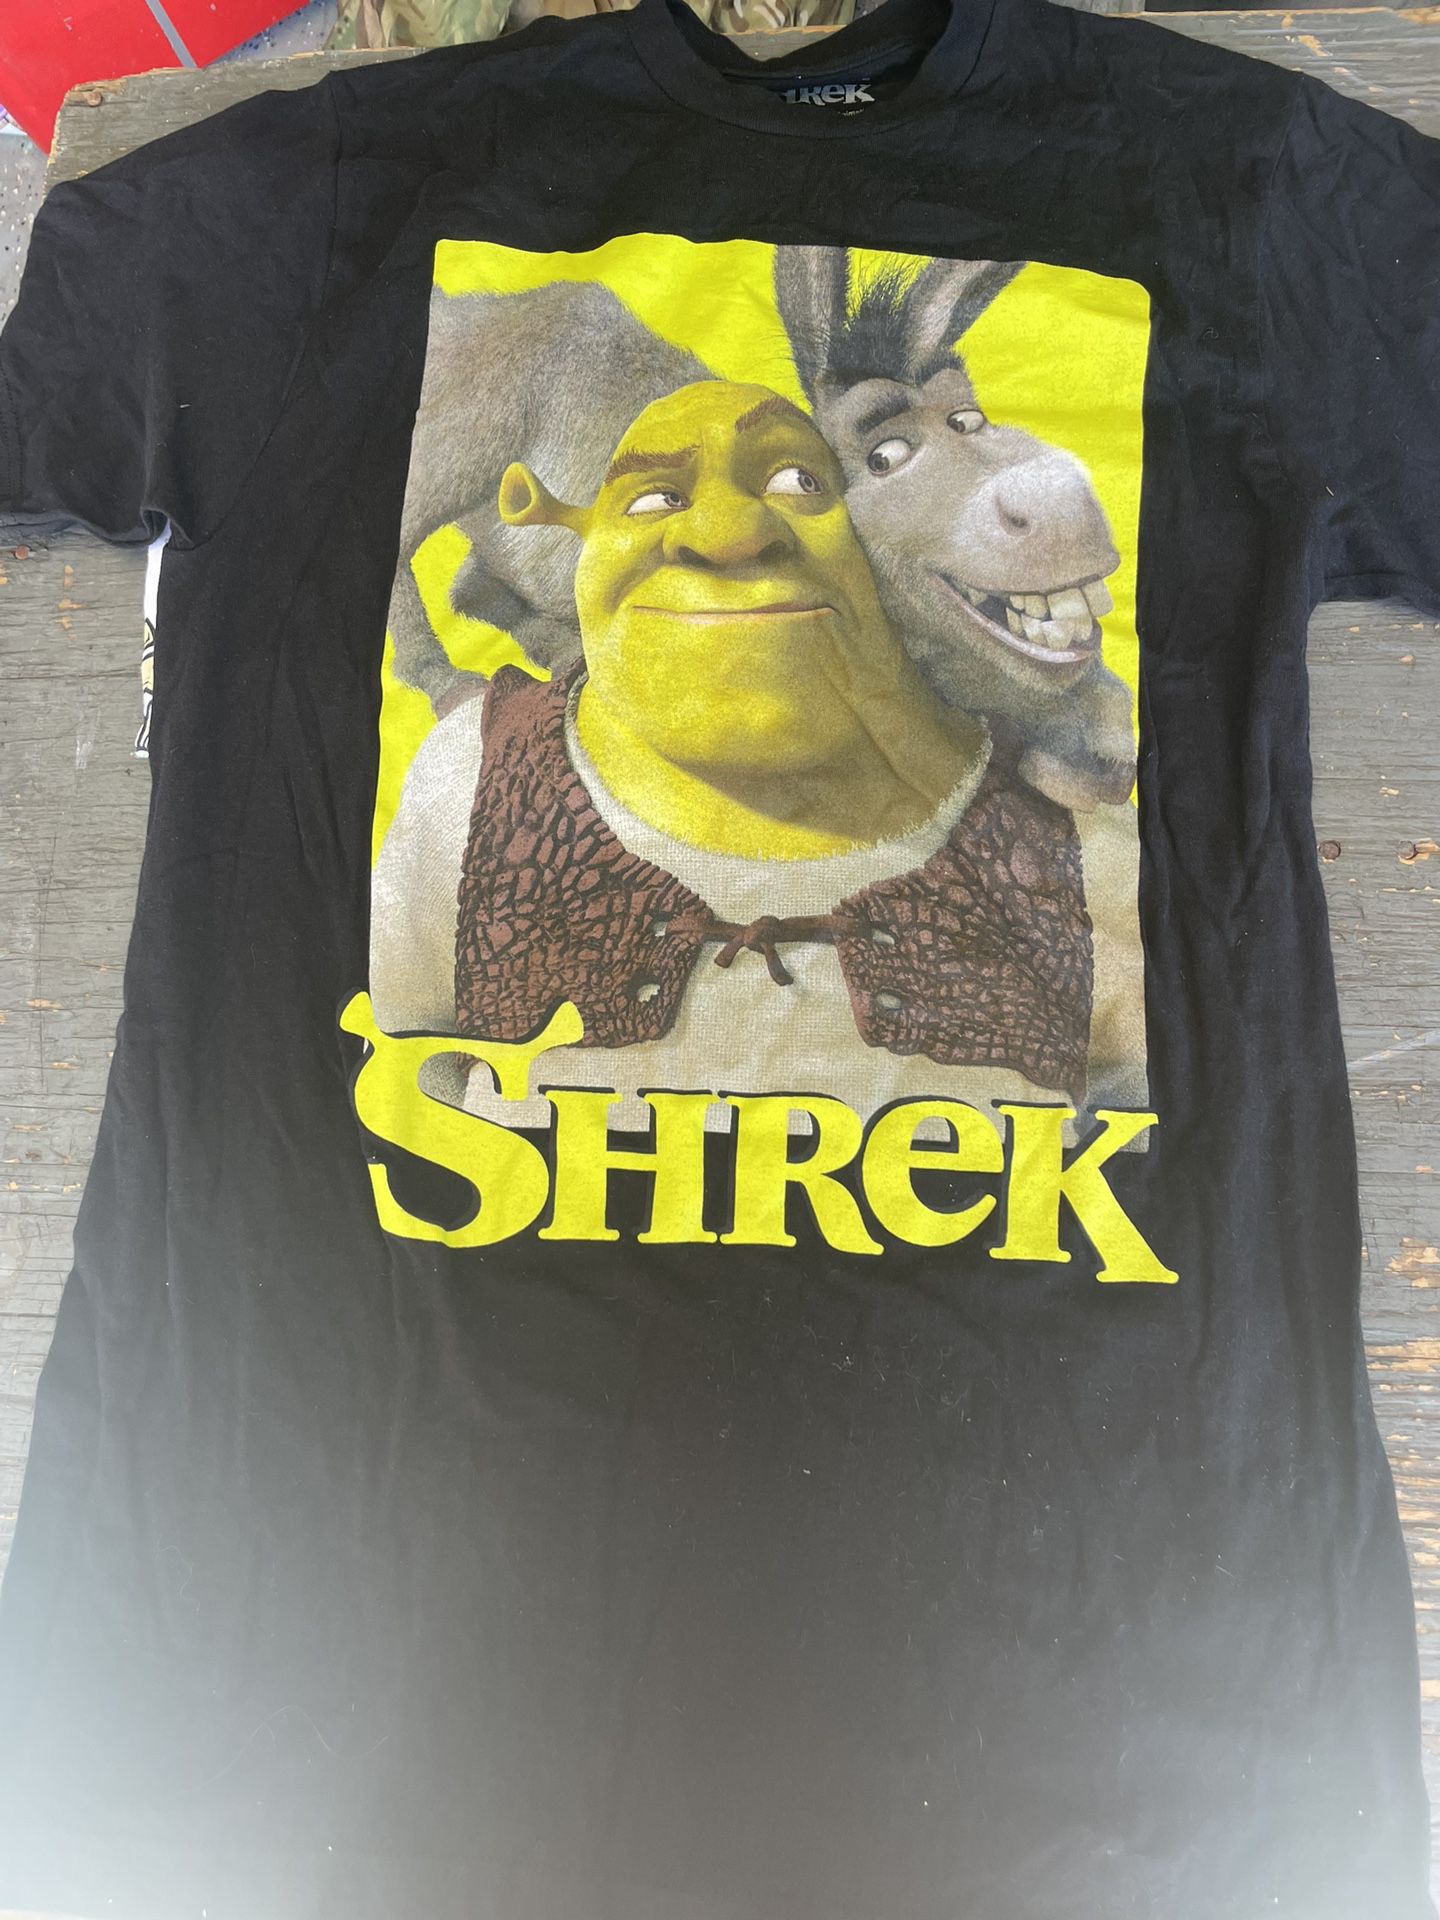 Shrek -Disney, Star Wars Shirts - S/M/L sizes